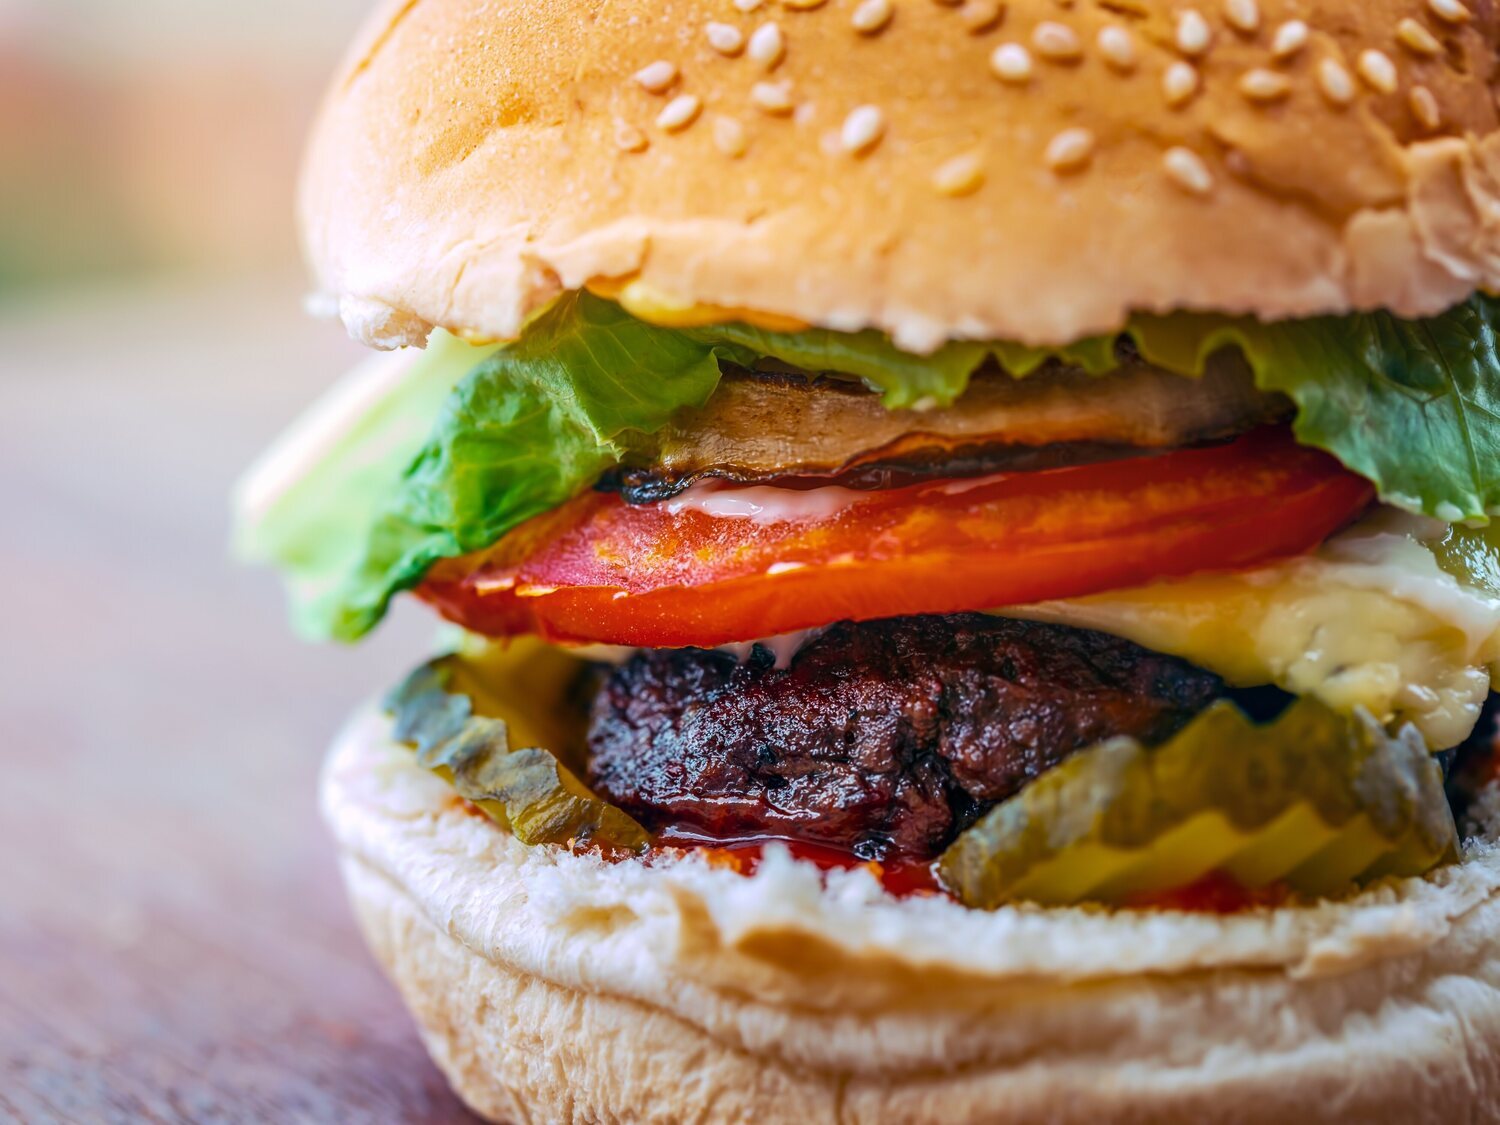 Alerta alimentaria: retiran de la venta estas populares hamburguesas por causar varios brotes de salmonelosis